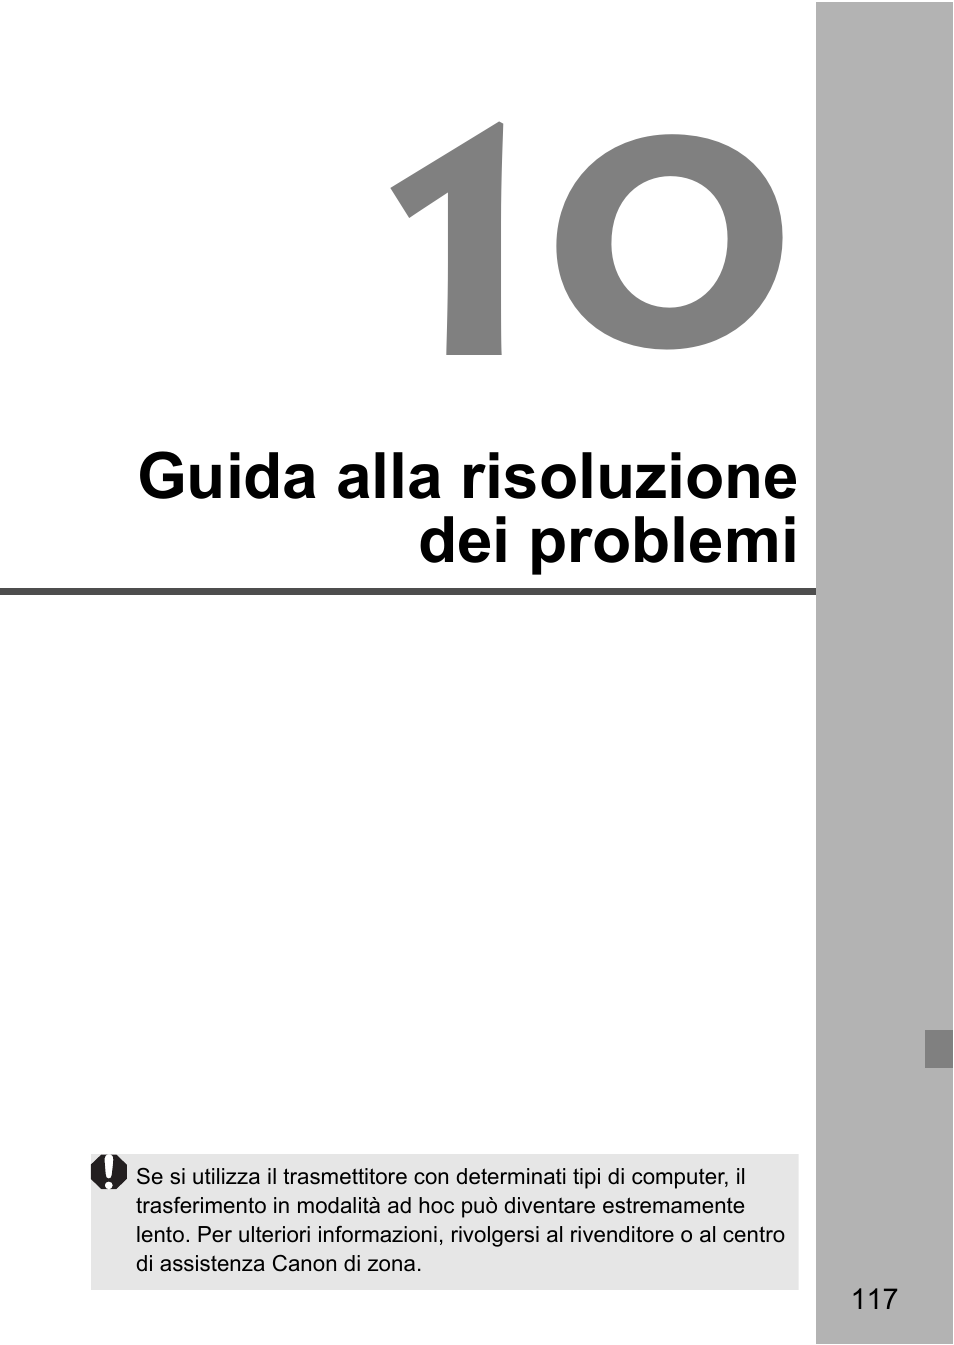 Guida alla risoluzione dei problemi | Canon EOS 1D X Mark II Manuale d'uso | Pagina 117 / 152